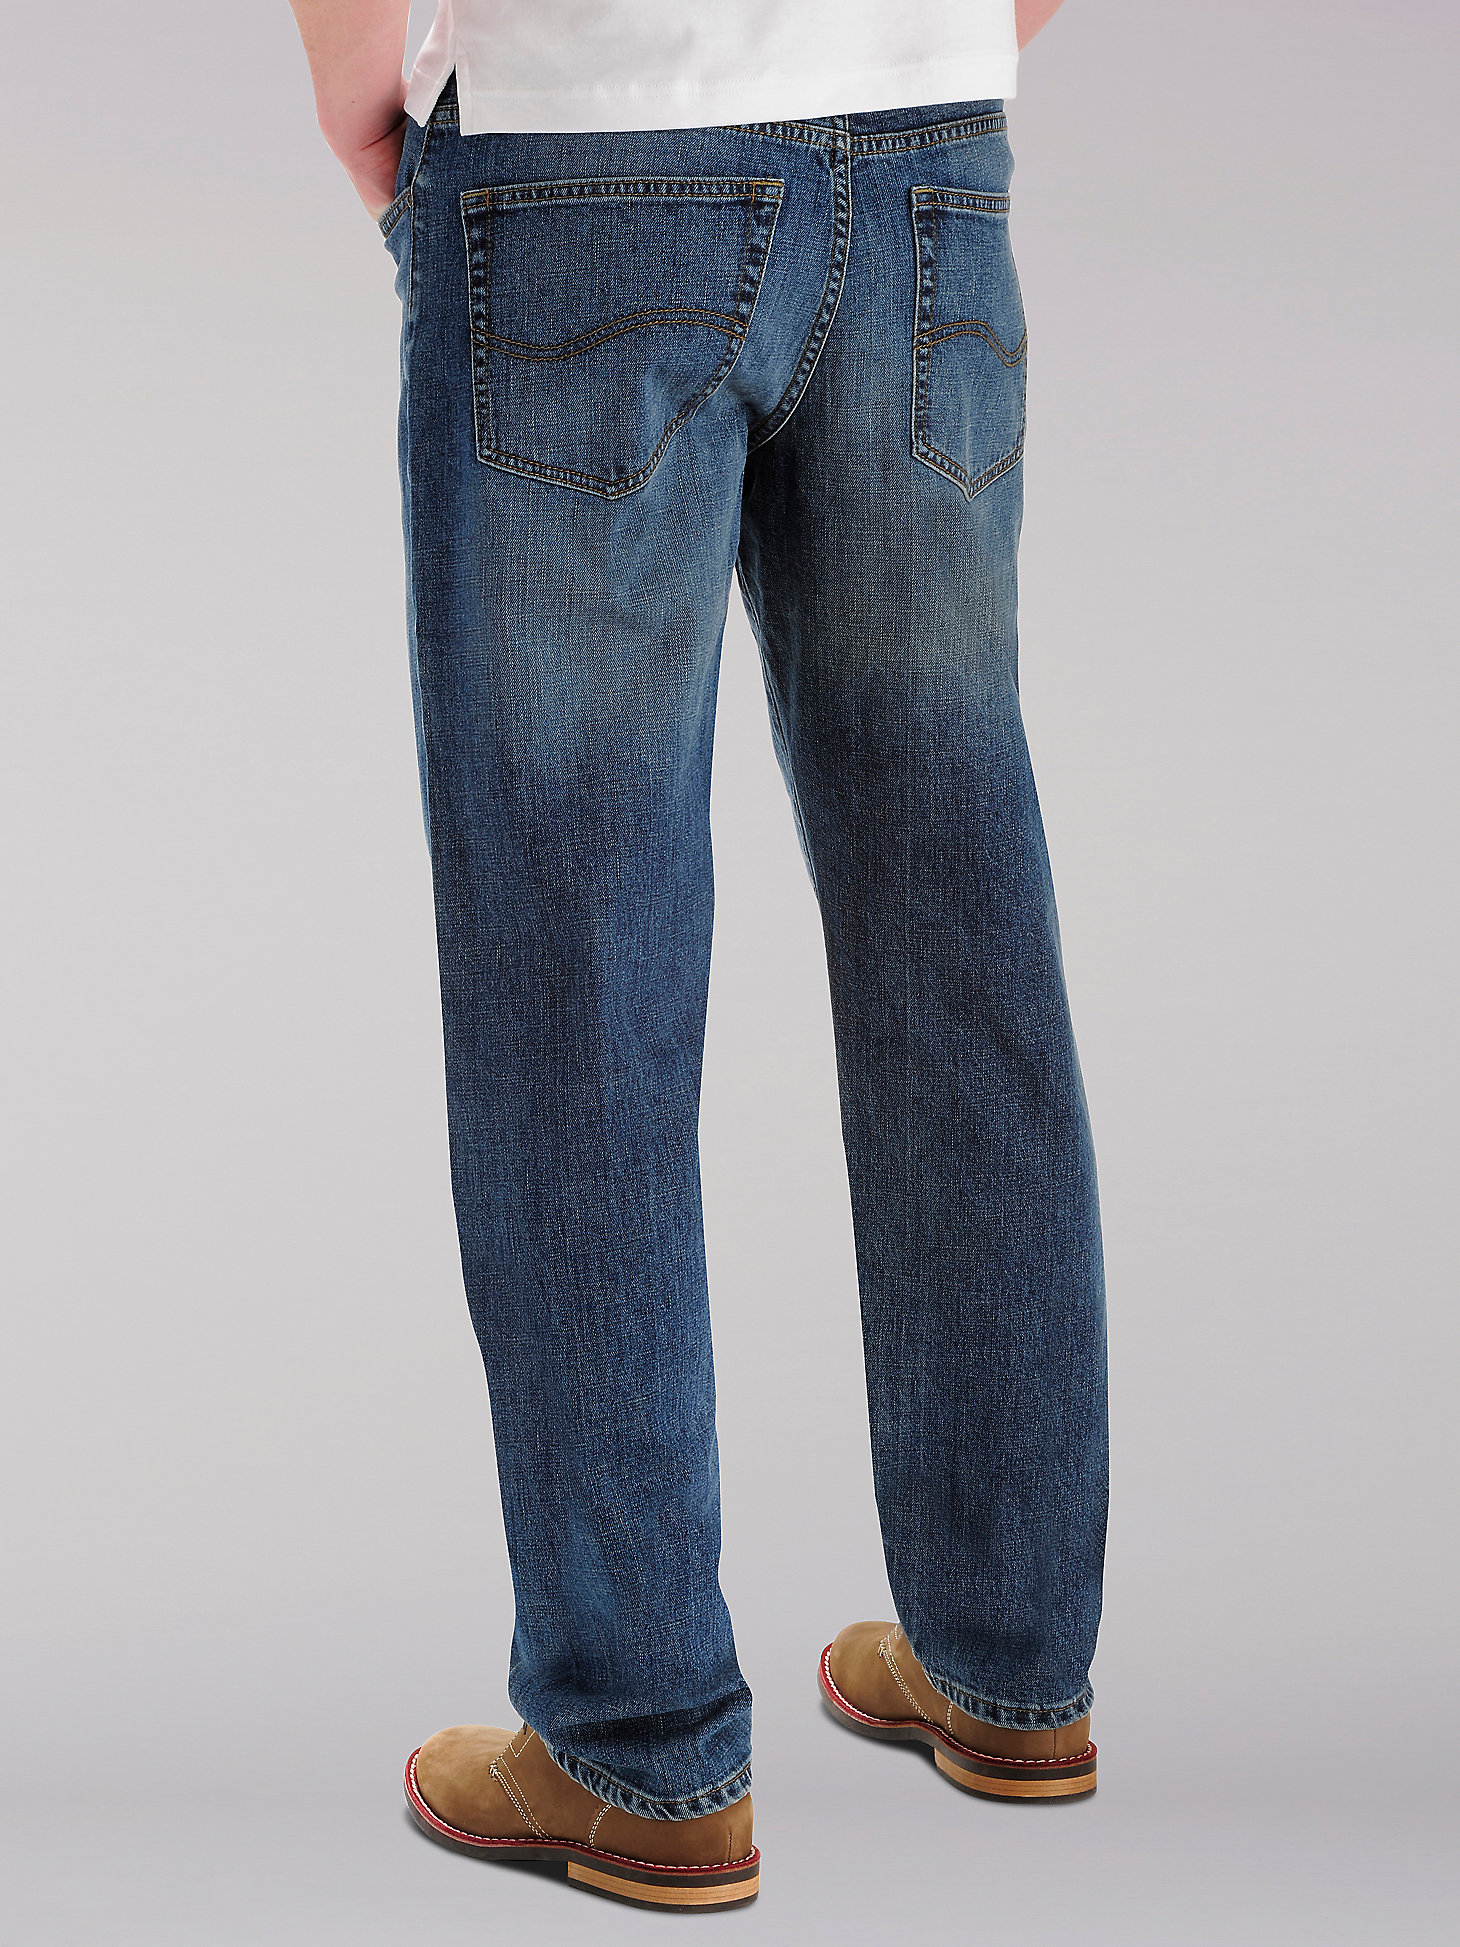 Men’s Custom Fit Loose Straight Leg Jean (Big&Tall) in Drifter alternative view 1